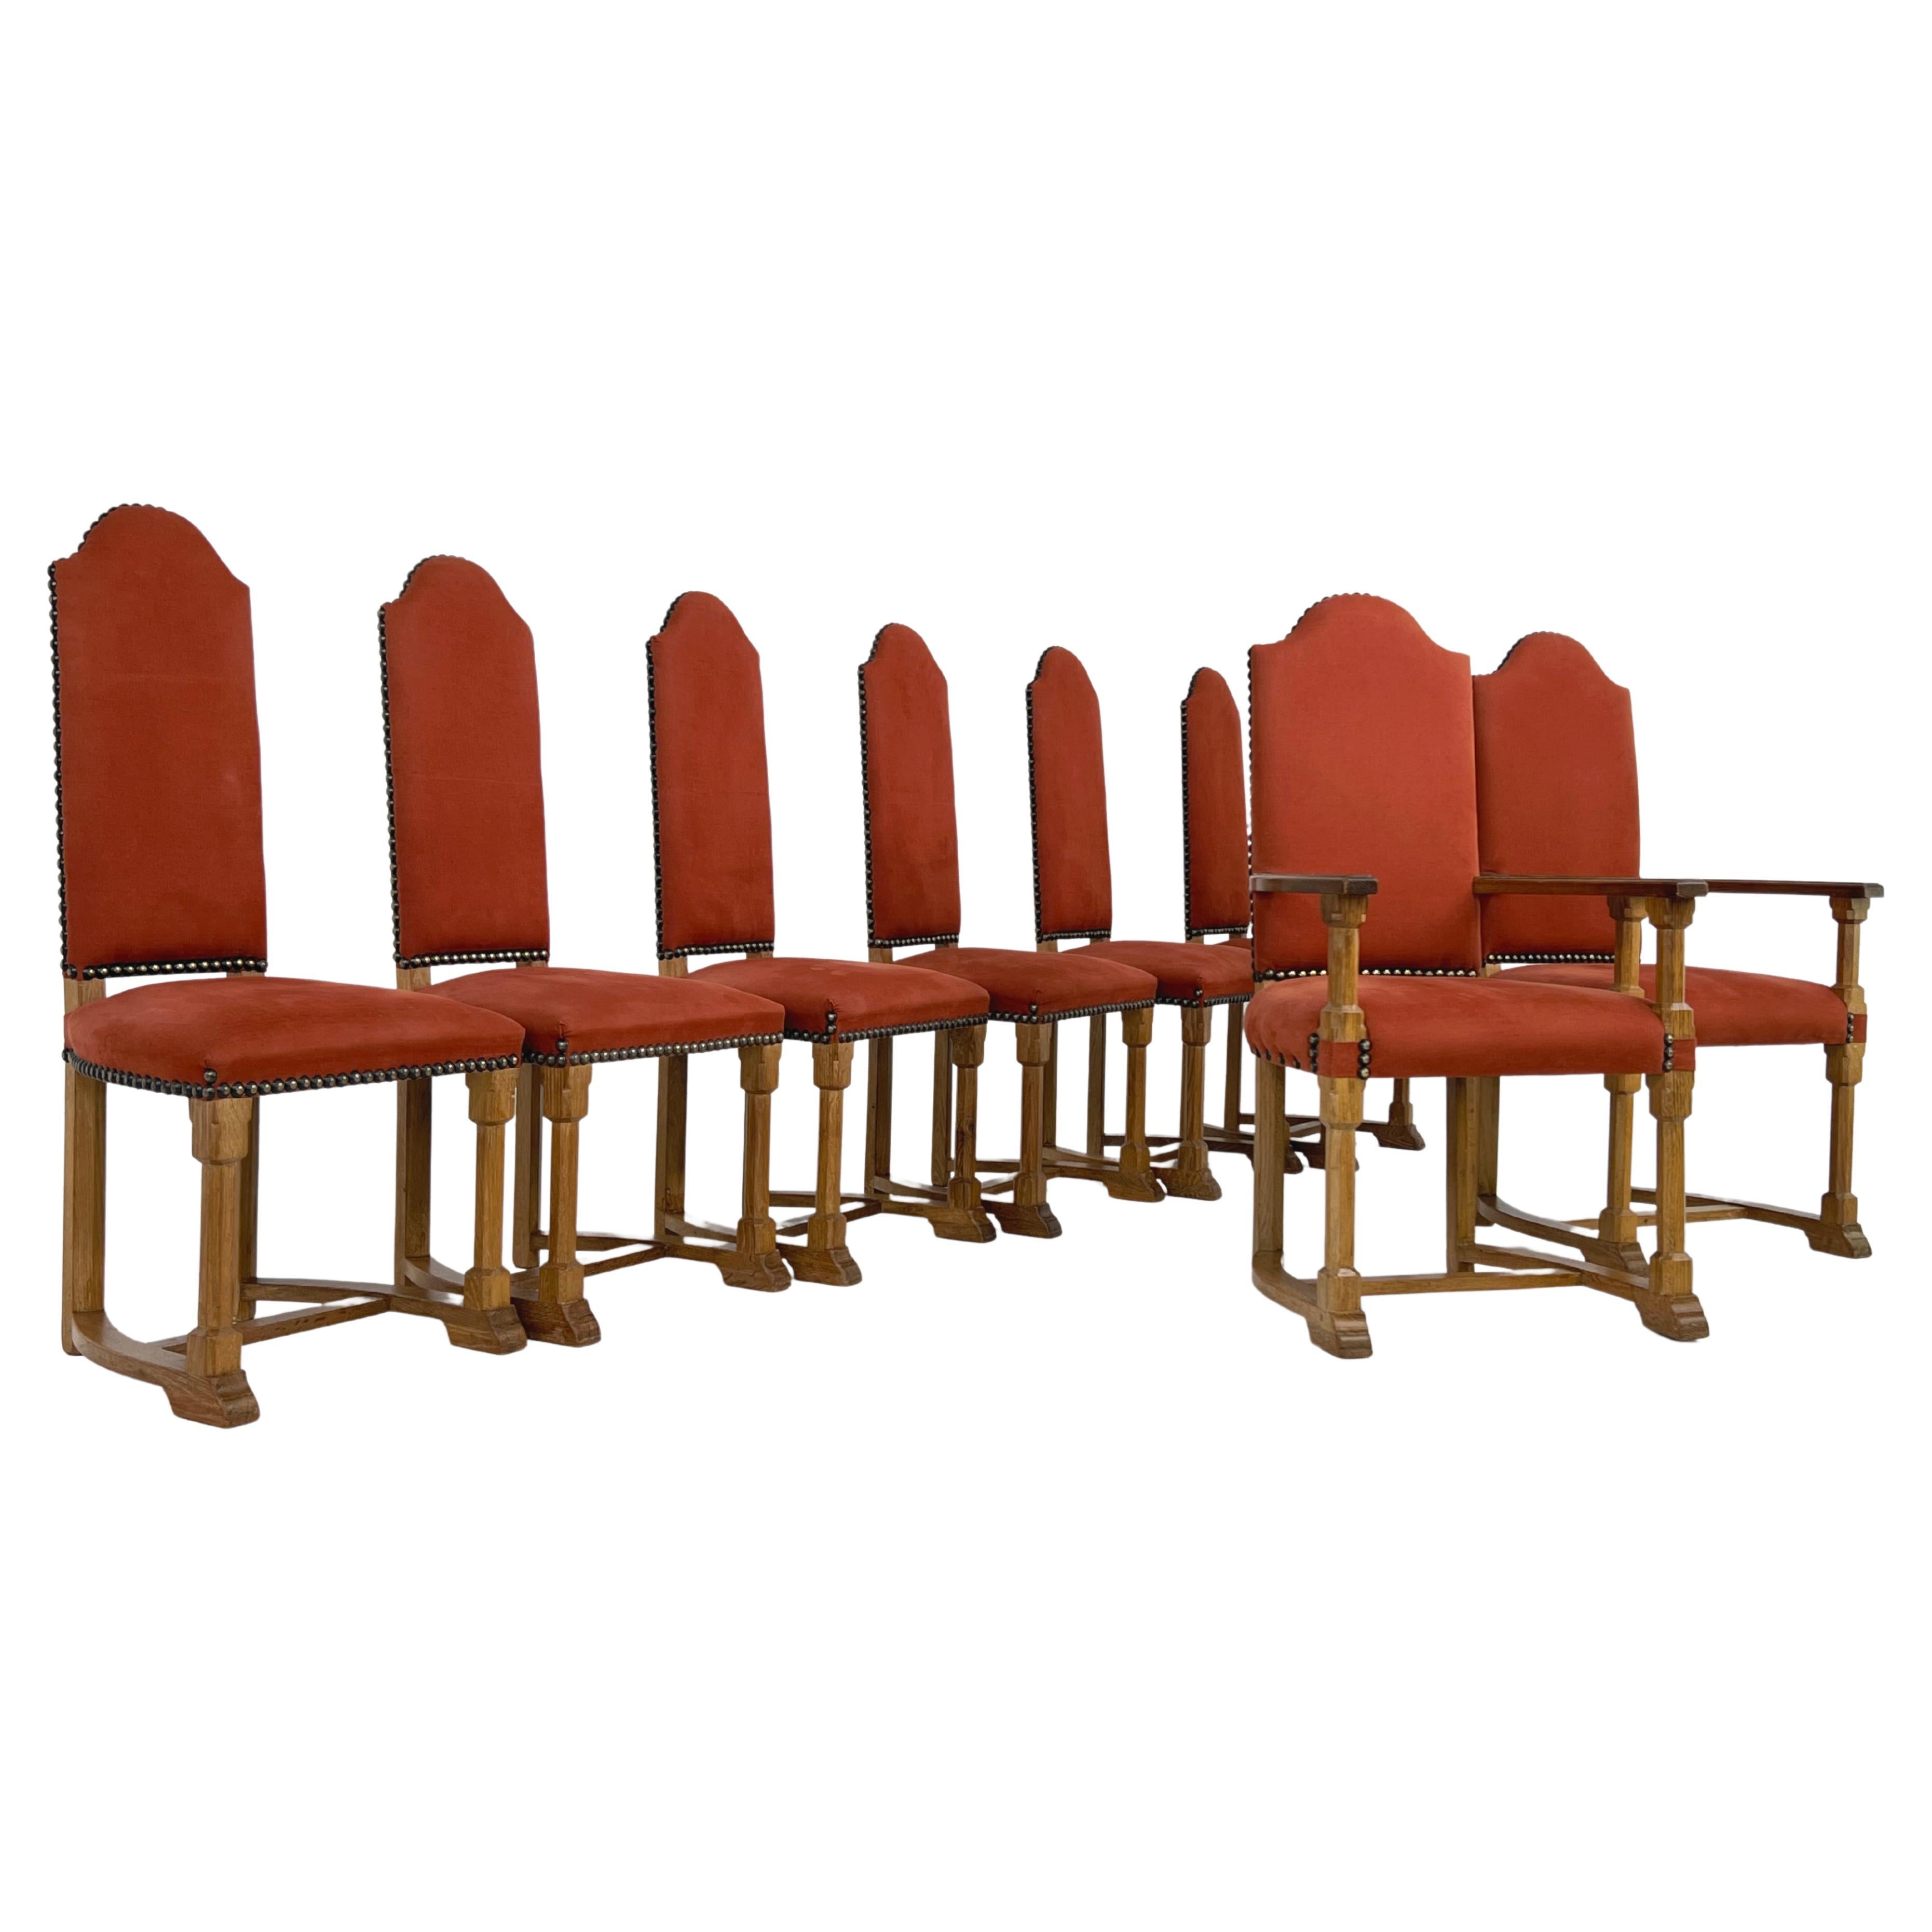 Ensemble de 8 chaises françaises anciennes de style Louis XIII en bois et tissu